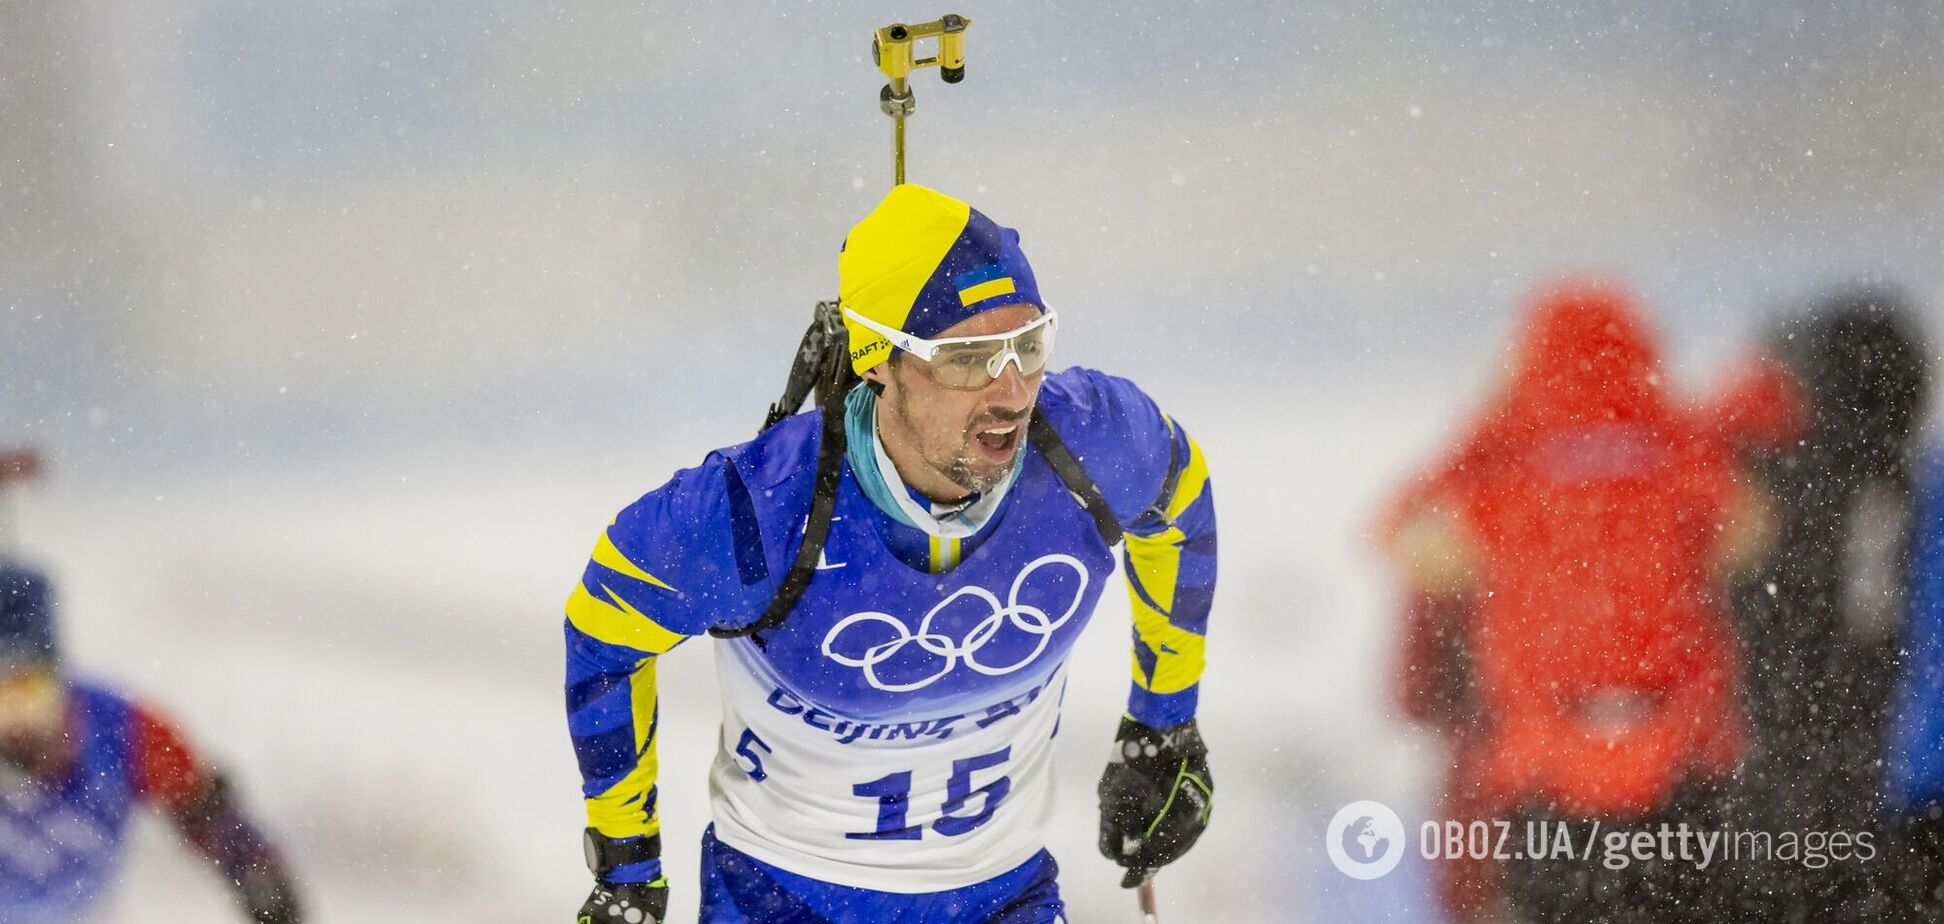 Случилось необъяснимое: украинский биатлонист извинился за плохую стрельбу в эстафете Олимпиады